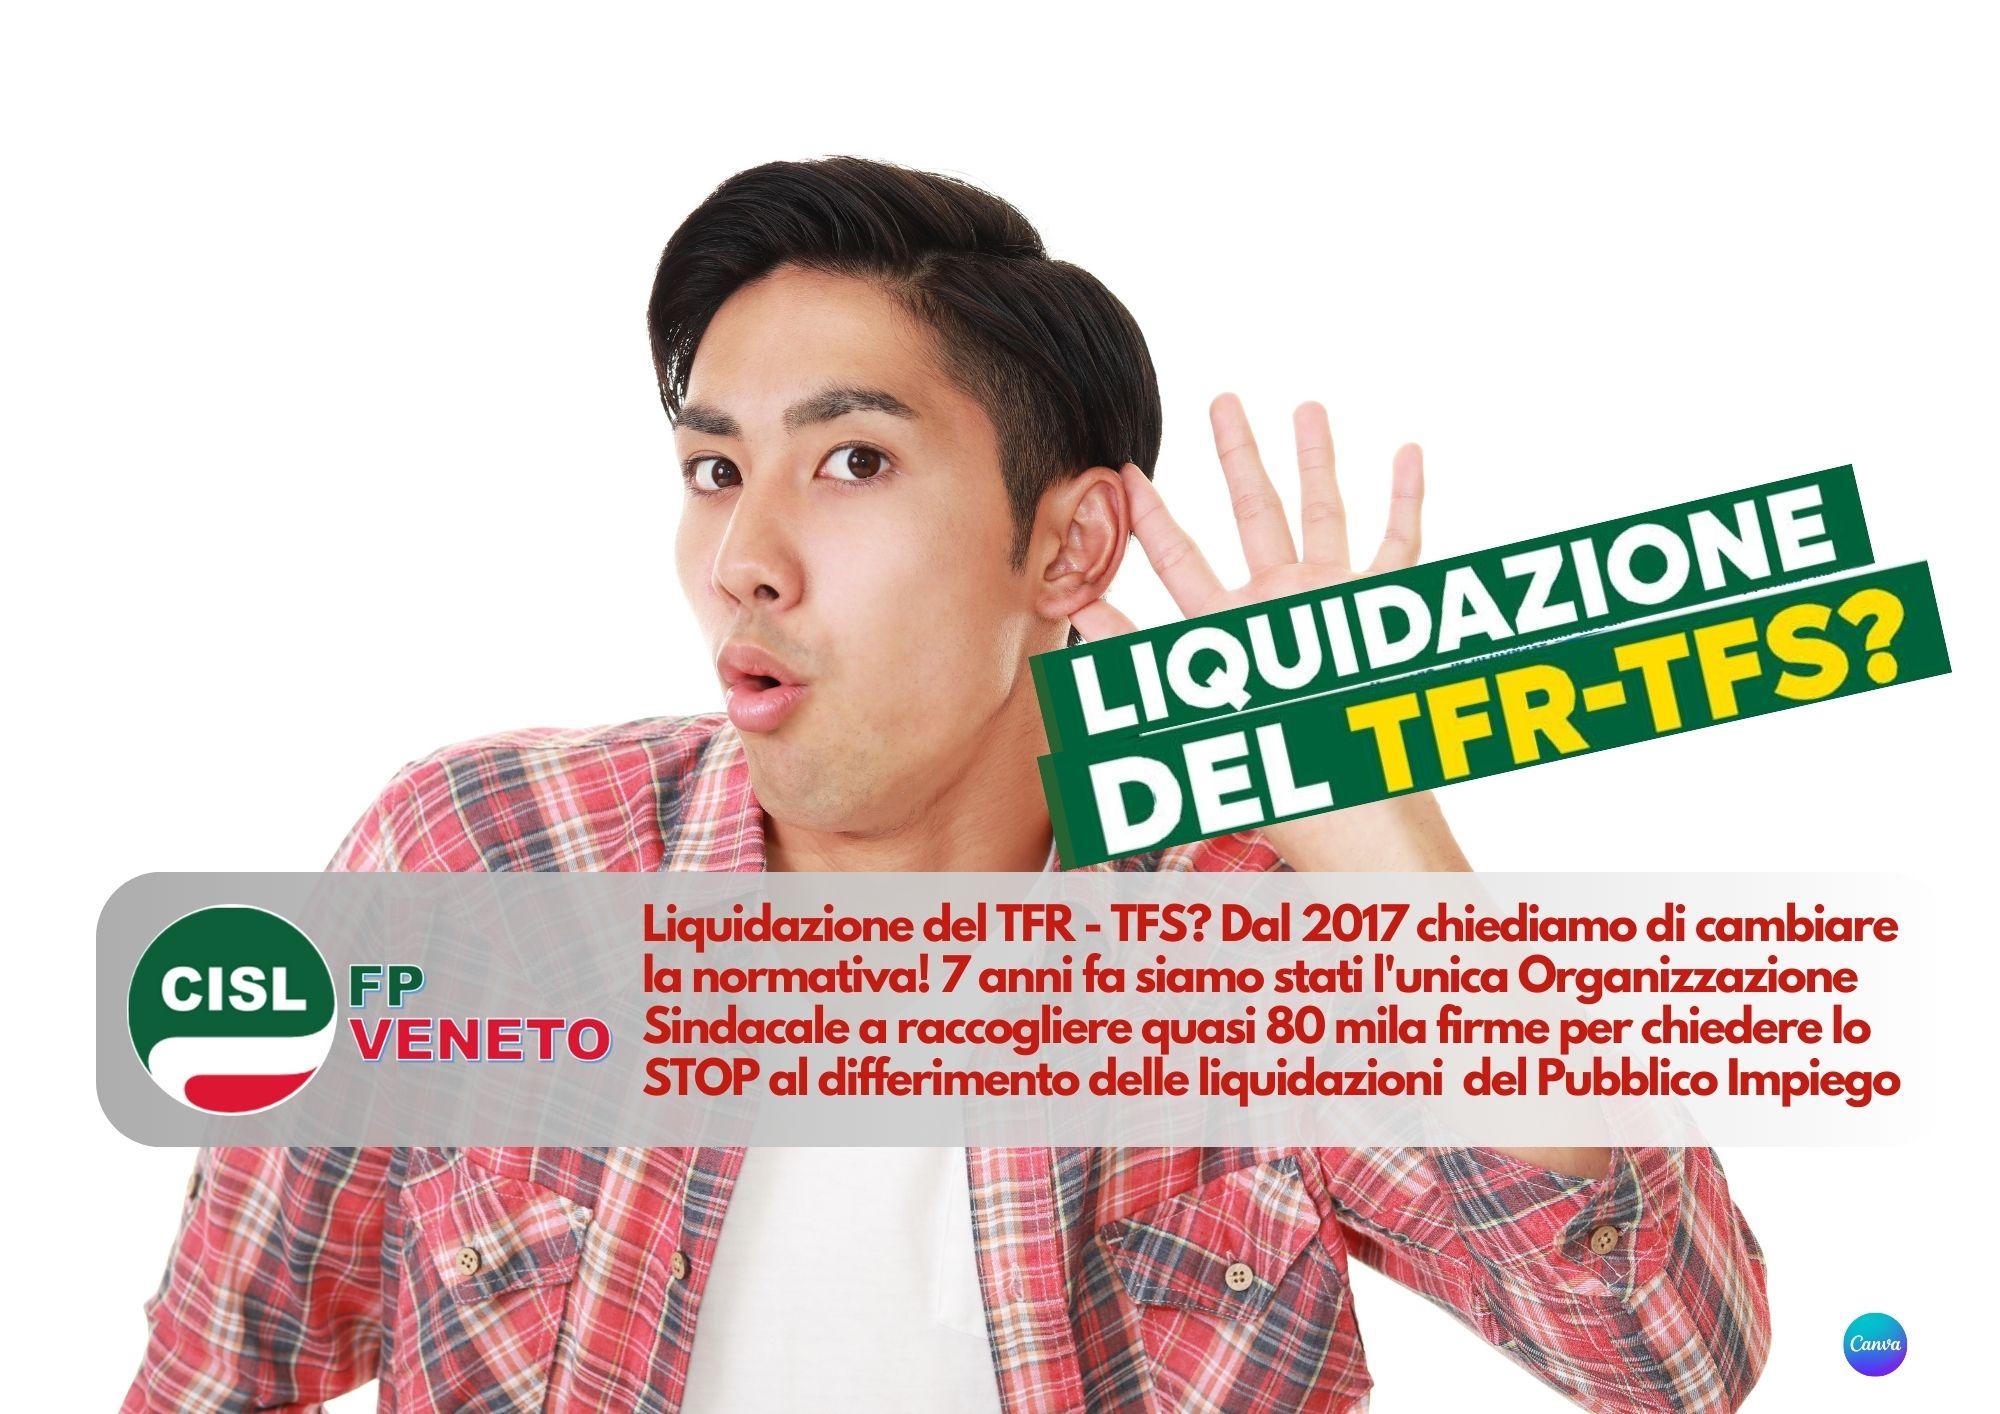 CISL FP Veneto. Liquidazione del TFR - TFS? Dal 2017 chiediamo di cambiare la normativa!